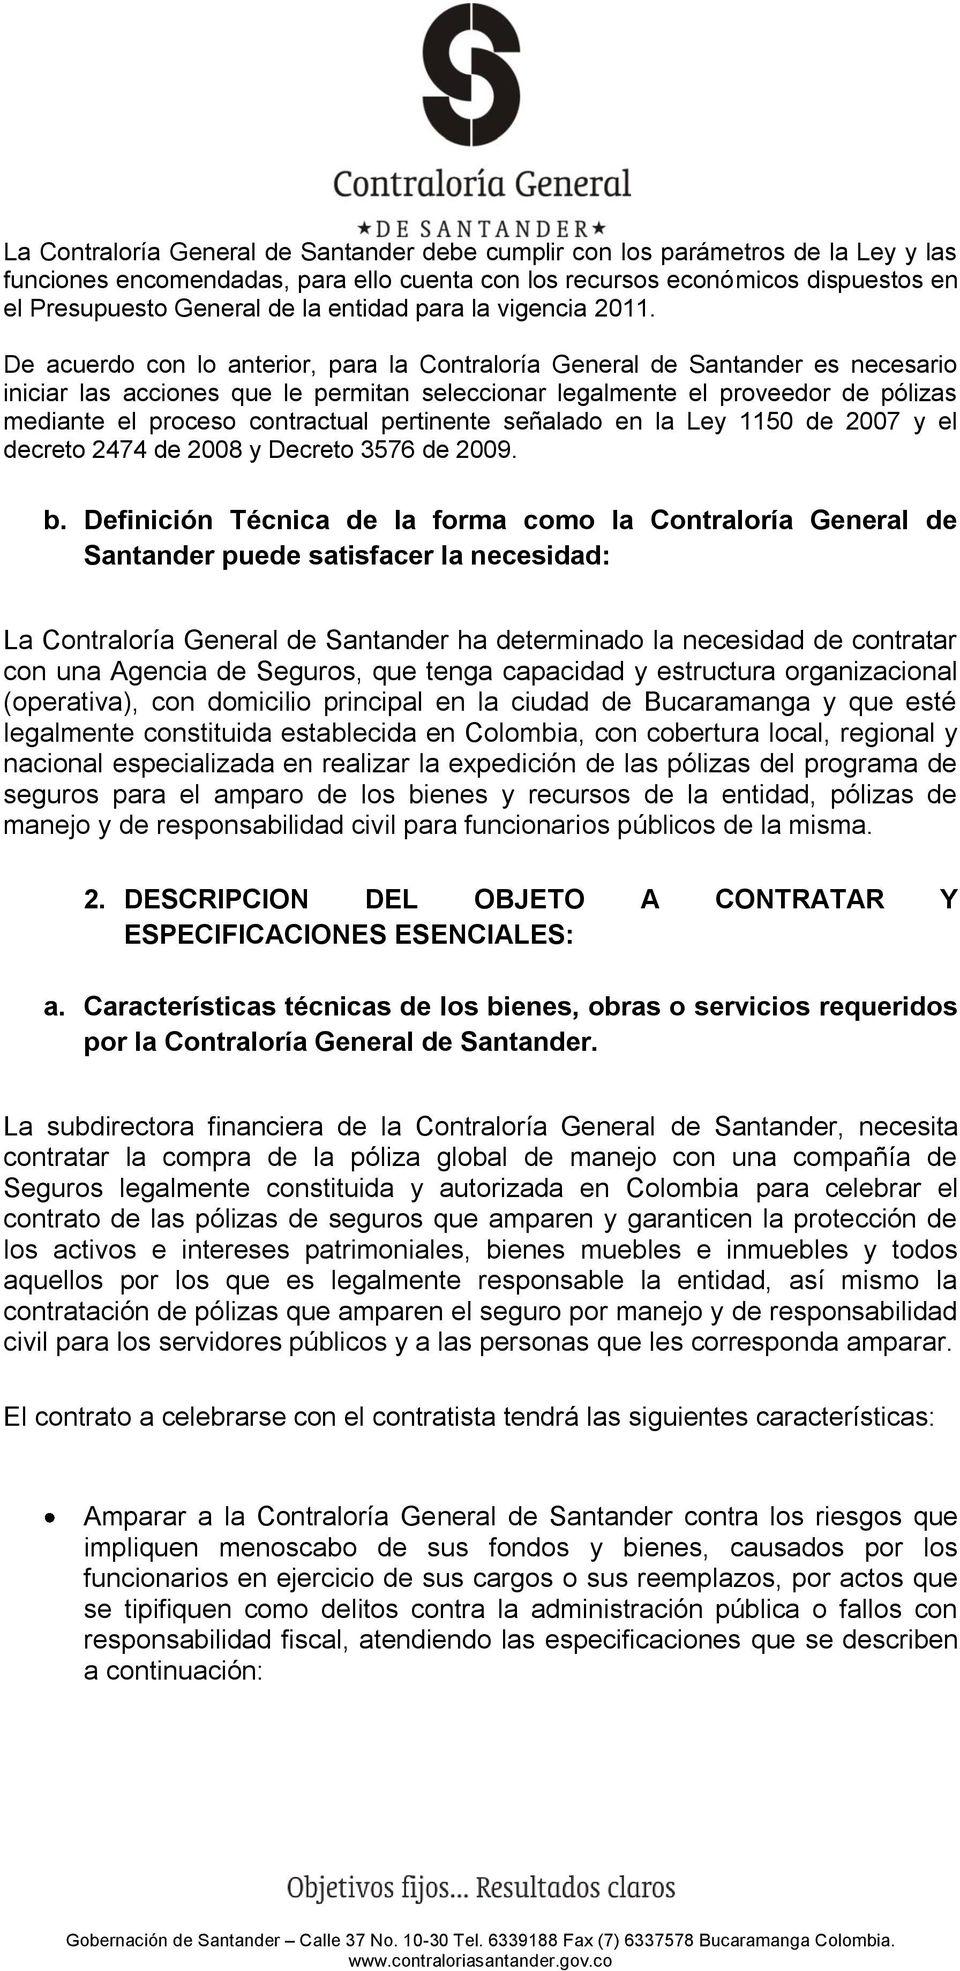 De acuerdo con lo anterior, para la Contraloría General de Santander es necesario iniciar las acciones que le permitan seleccionar legalmente el proveedor de pólizas mediante el proceso contractual